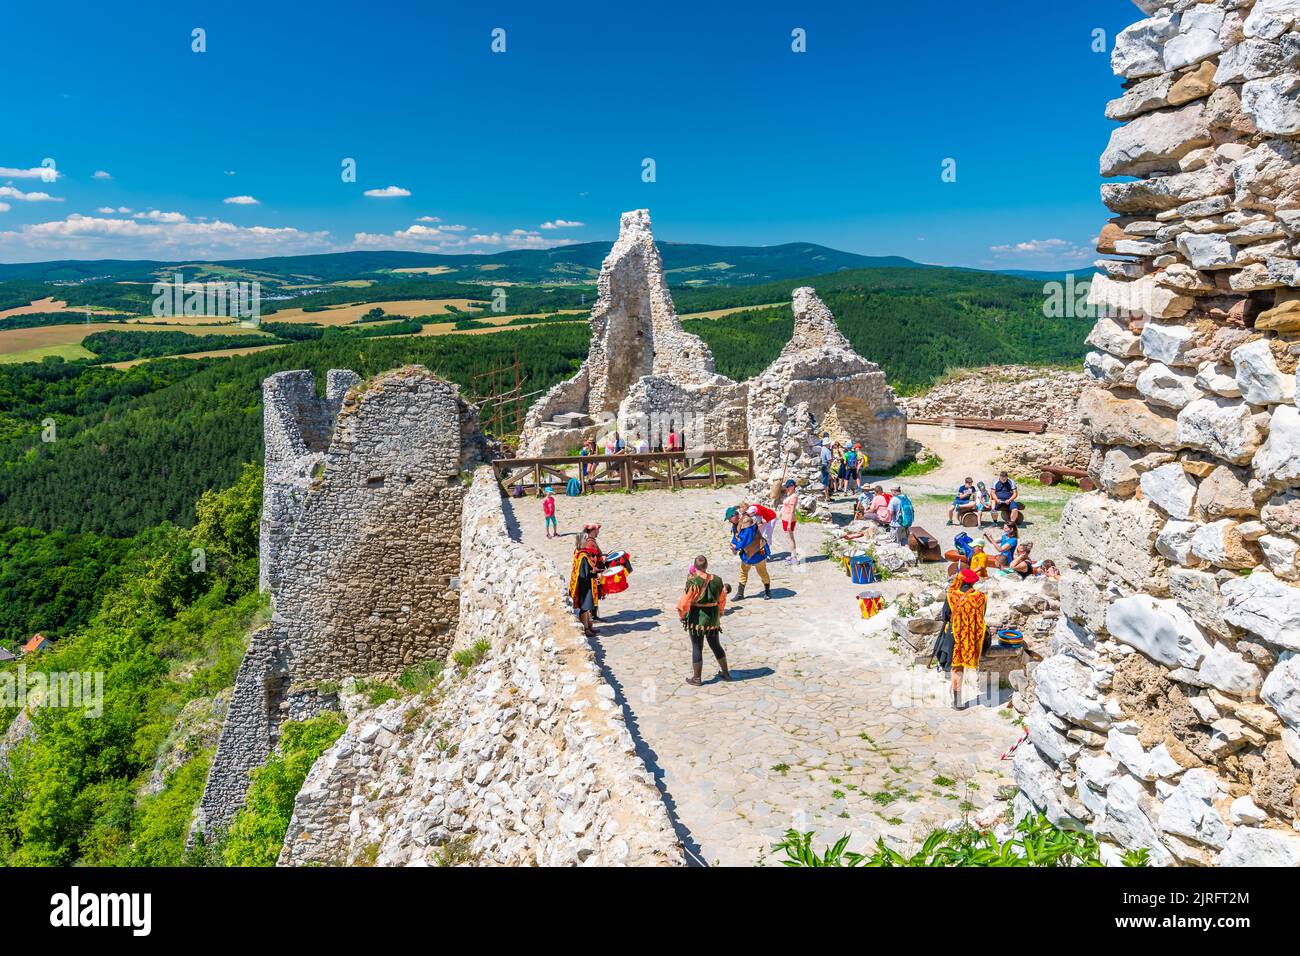 Cachtice, Slowakei - 4,7.2020: Touristen besuchen die Ruine der mittelalterlichen Burg Cachtice. Berühmte Burg aus der Legende über die Blutlady Bathory bekannt. Summe Stockfoto